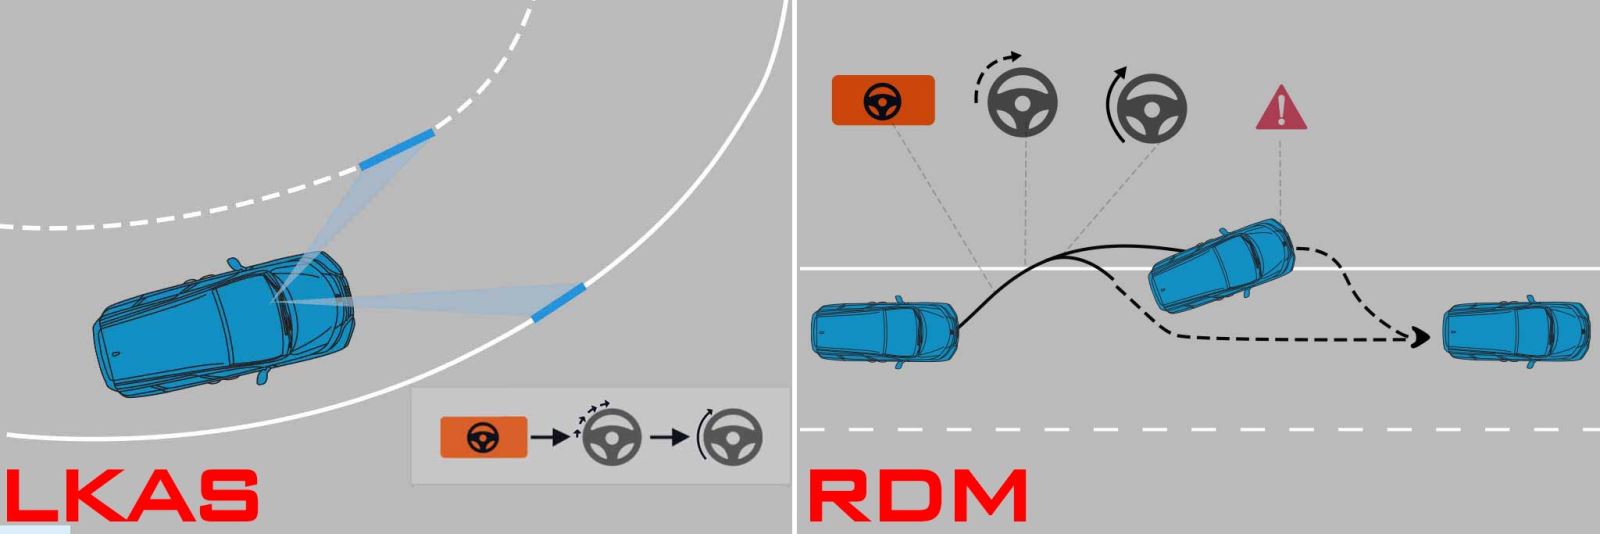 Hệ thống hỗ trợ giữ làn đường (LKAS) và giảm thiểu chệch làn đường (RDM)